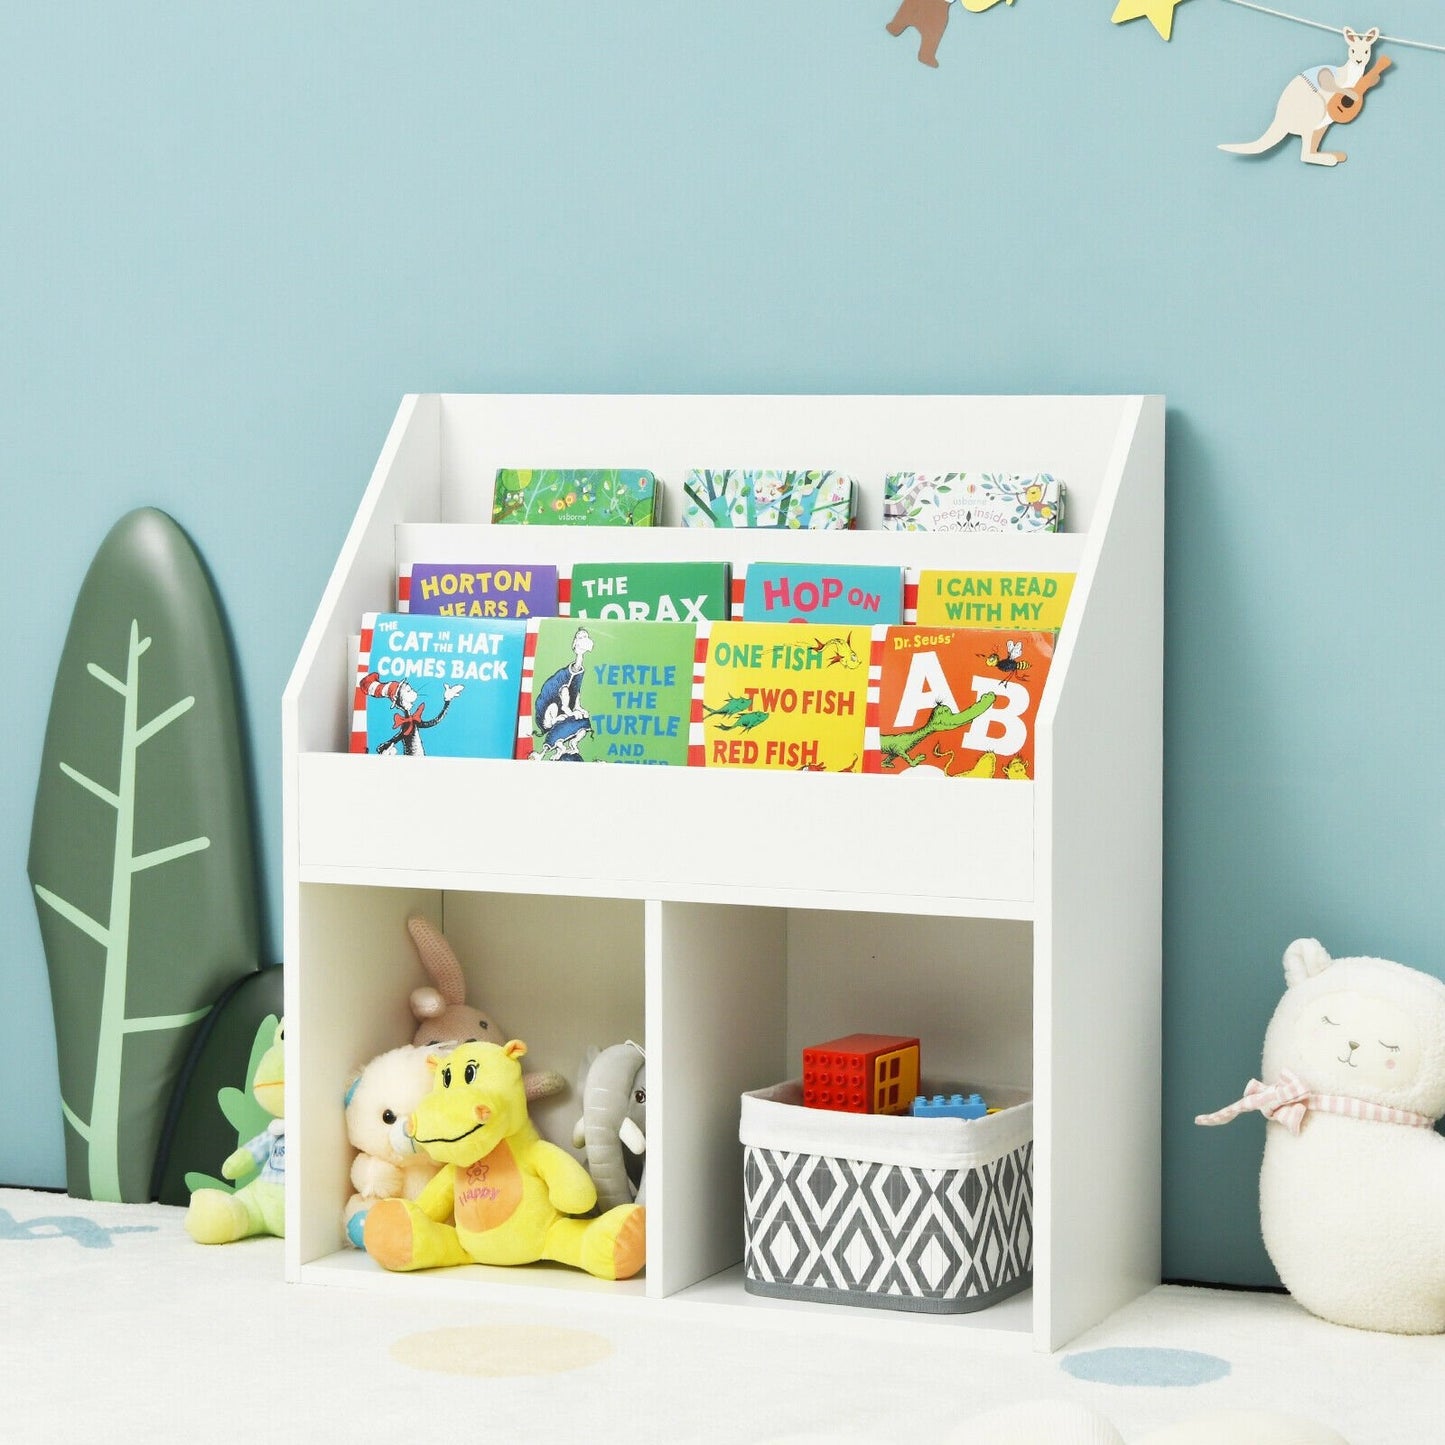 Kids Wooden Bookshelf Bookcase Children Toy Storage Cabinet Organizer White, White - Gallery Canada